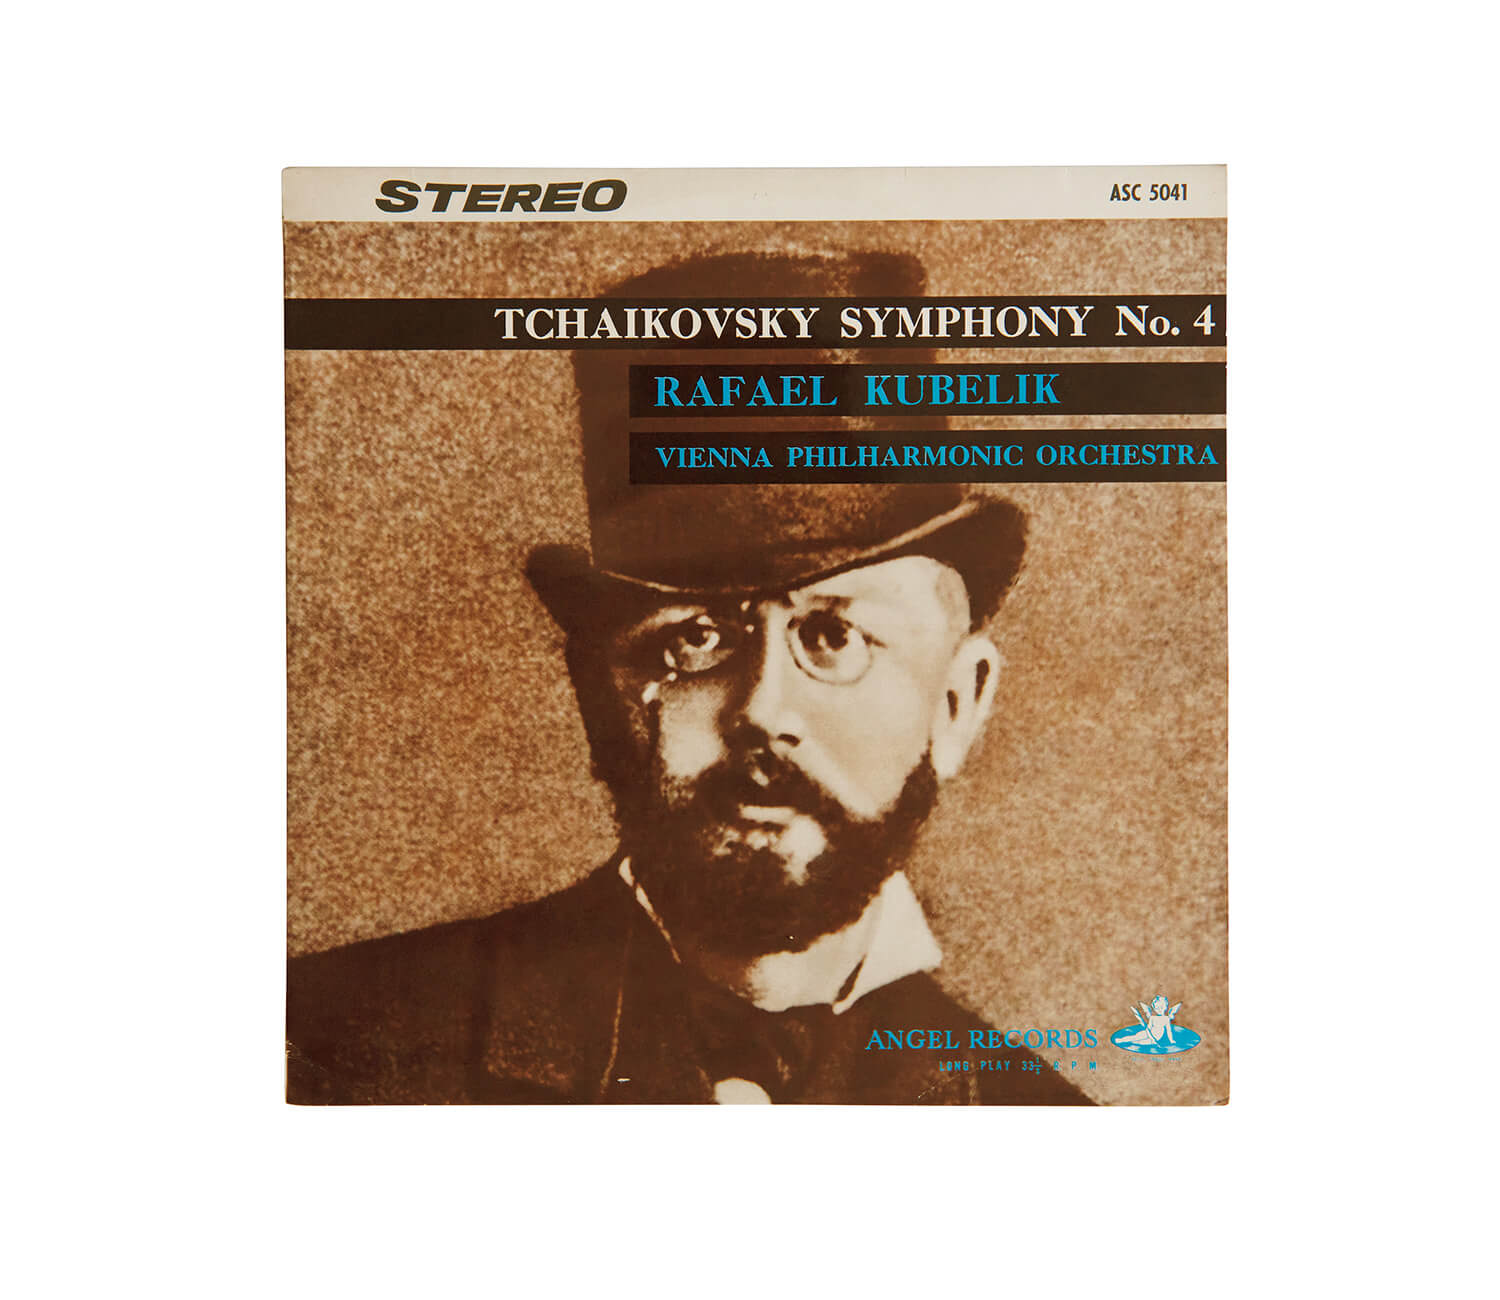 ウィーン・フィル ラファエル・クーベリック指揮、チャイコフスキー「交響曲第4番 ヘ短調」レコードジャケット